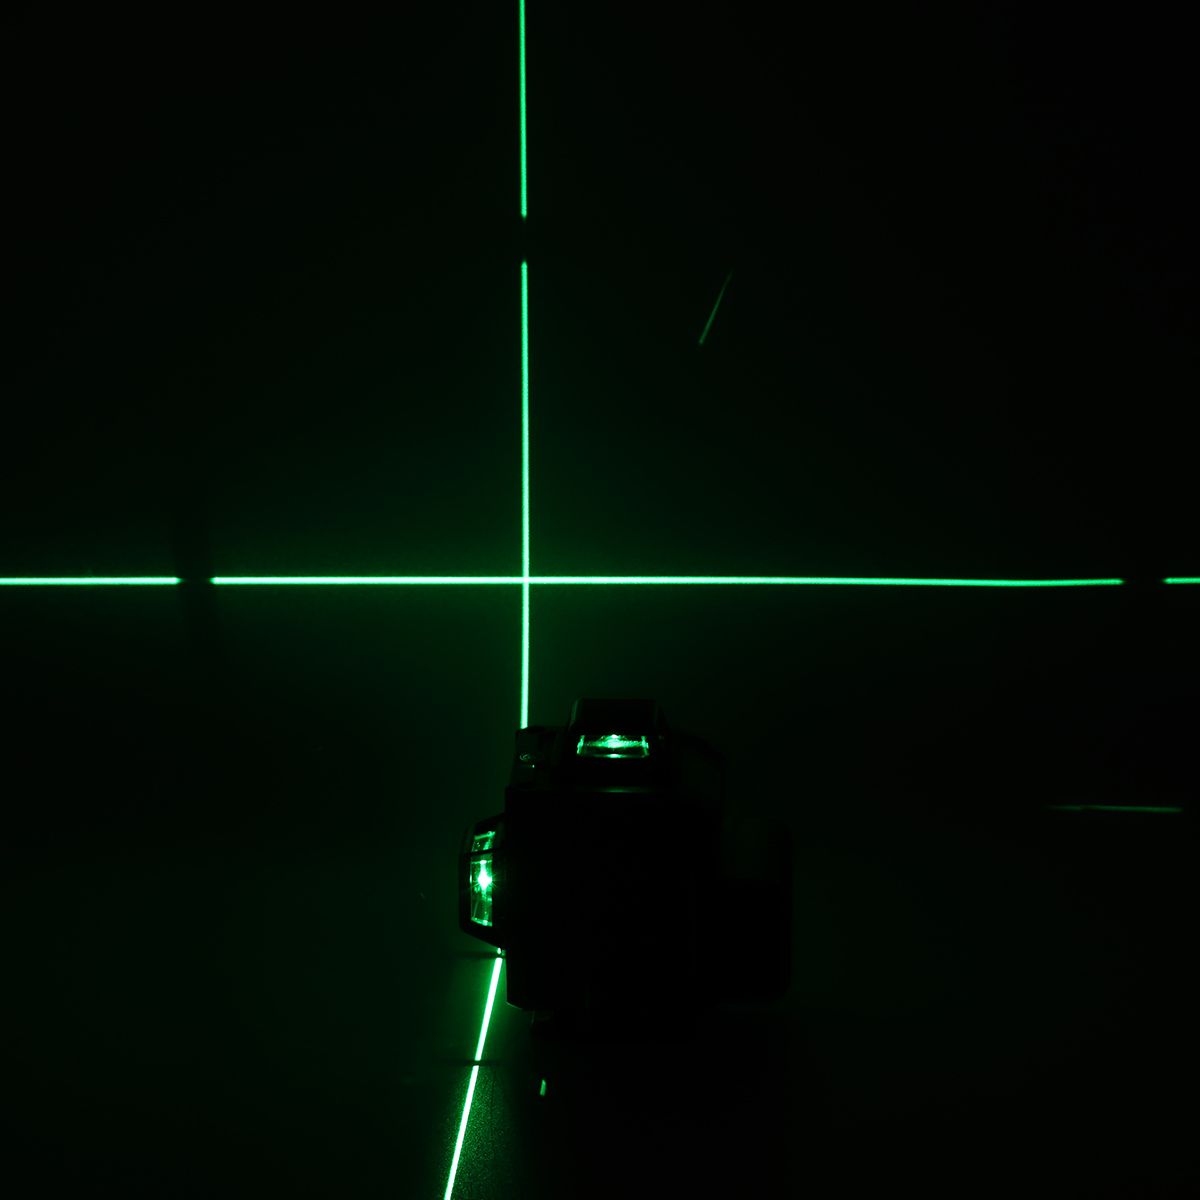 16-Line-LD-Green-Light-Laser-Level-4D-360deg-Cross-Self-Leveling-Measuring-Tool-1715020